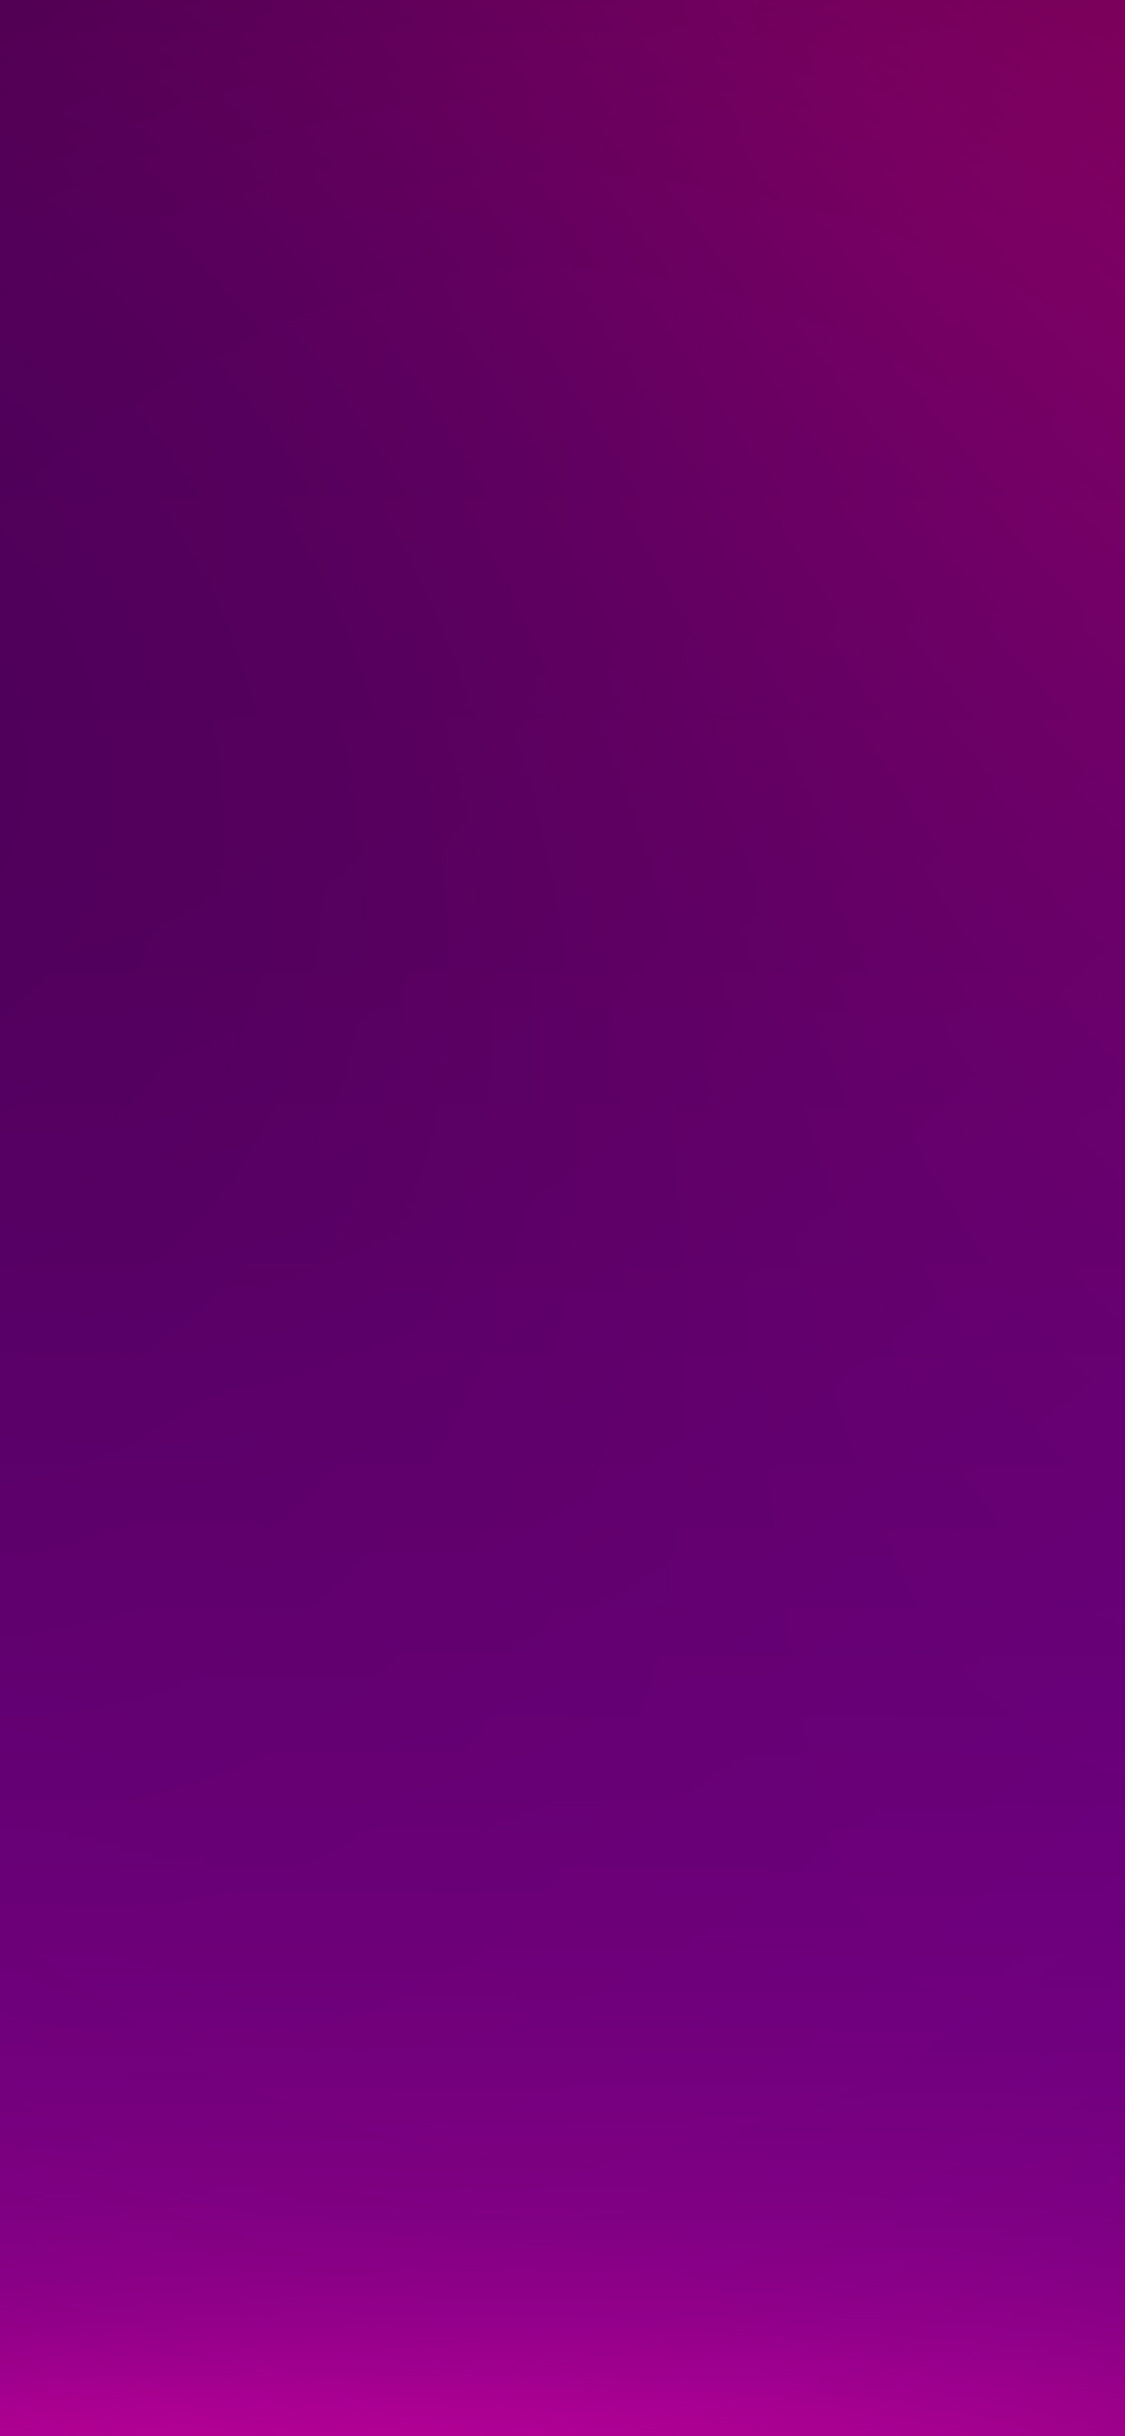 100以上 Iphone 壁紙 紫 Iphone 壁紙 紫 無地